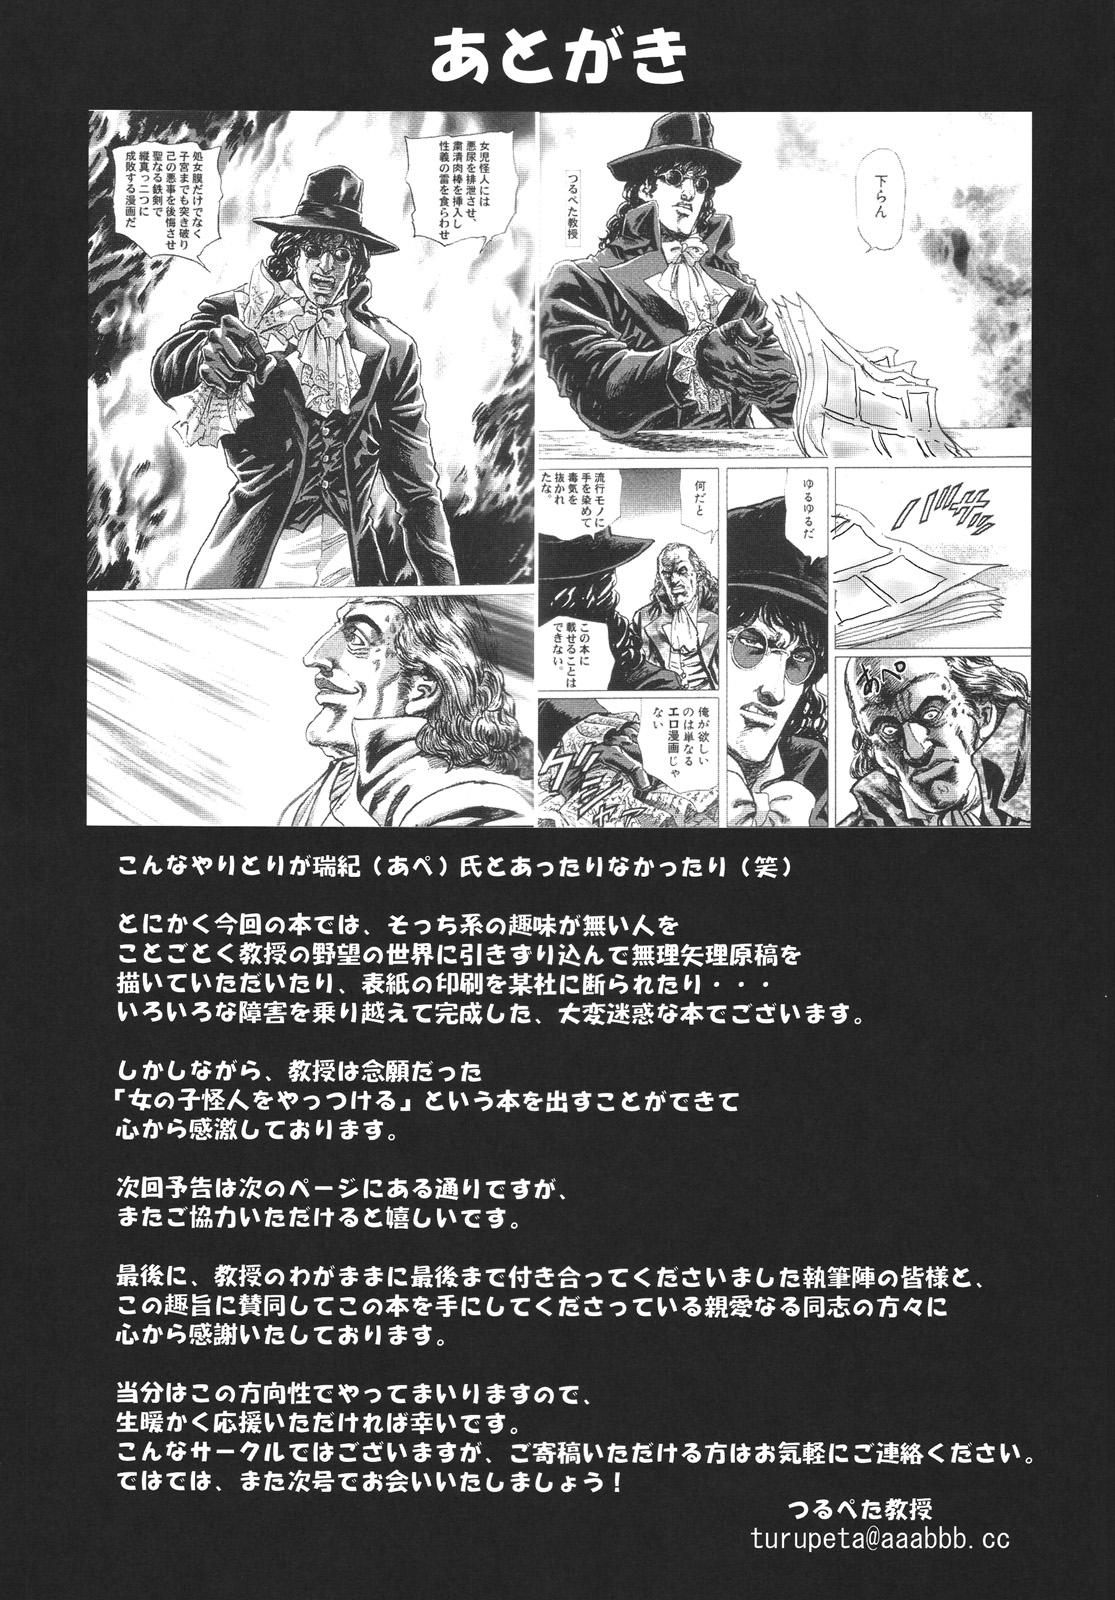 Stunning Tsurupeta Kenkyuu Houkokusho "Tsurupeta Kyoudan no Yabou " - Turupeta Recearch Report Stretch - Page 32